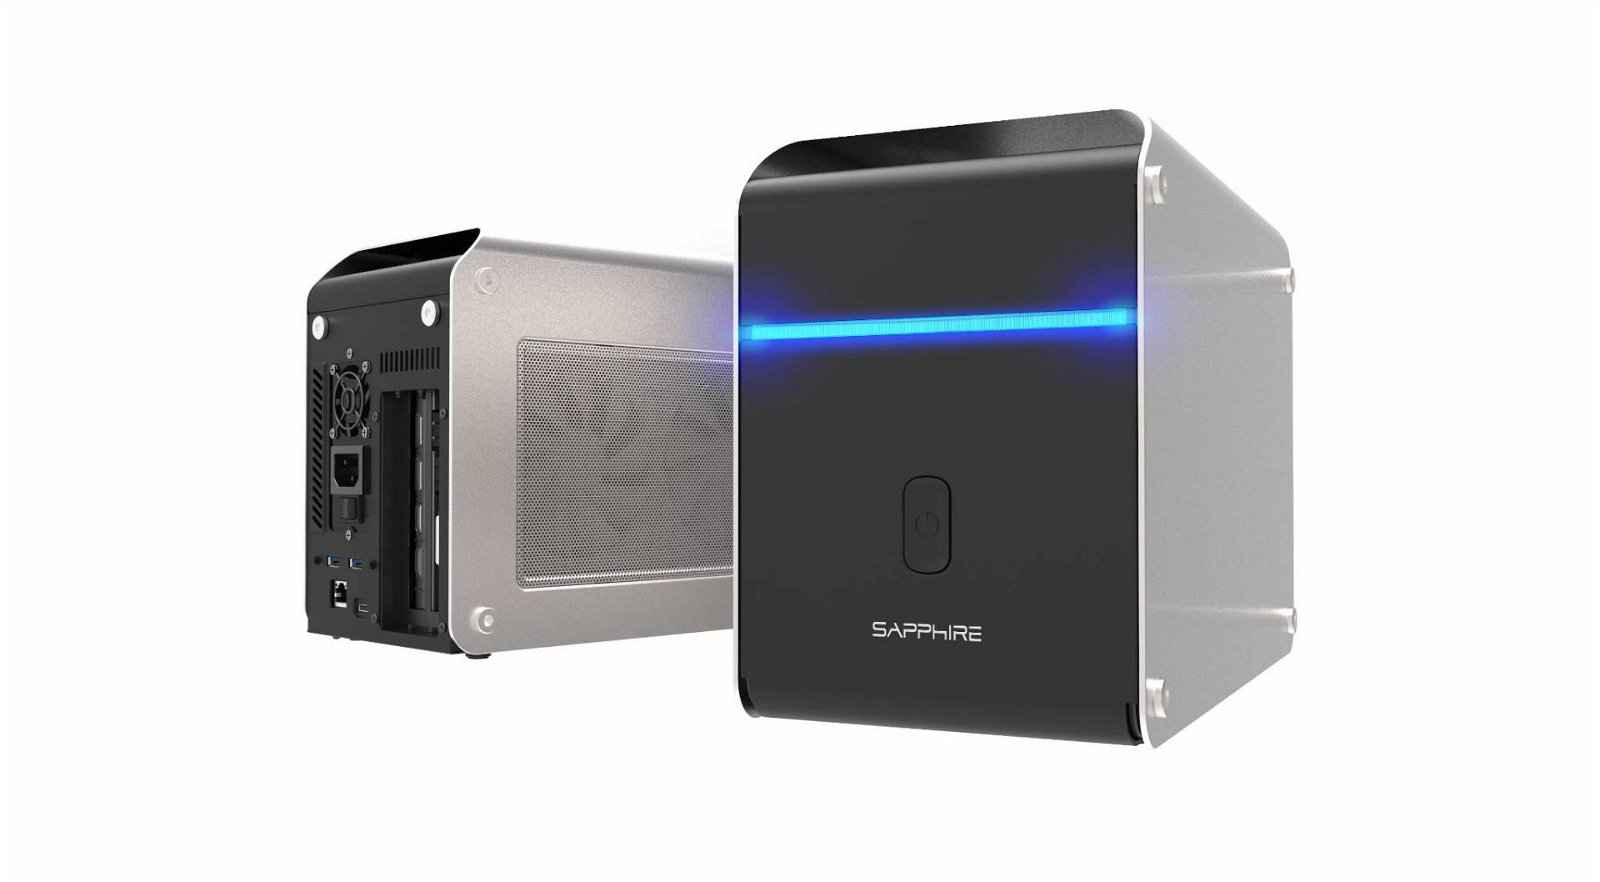 Immagine di Sapphire GearBoX per avere la potenza di una GPU desktop sul vostro portatile